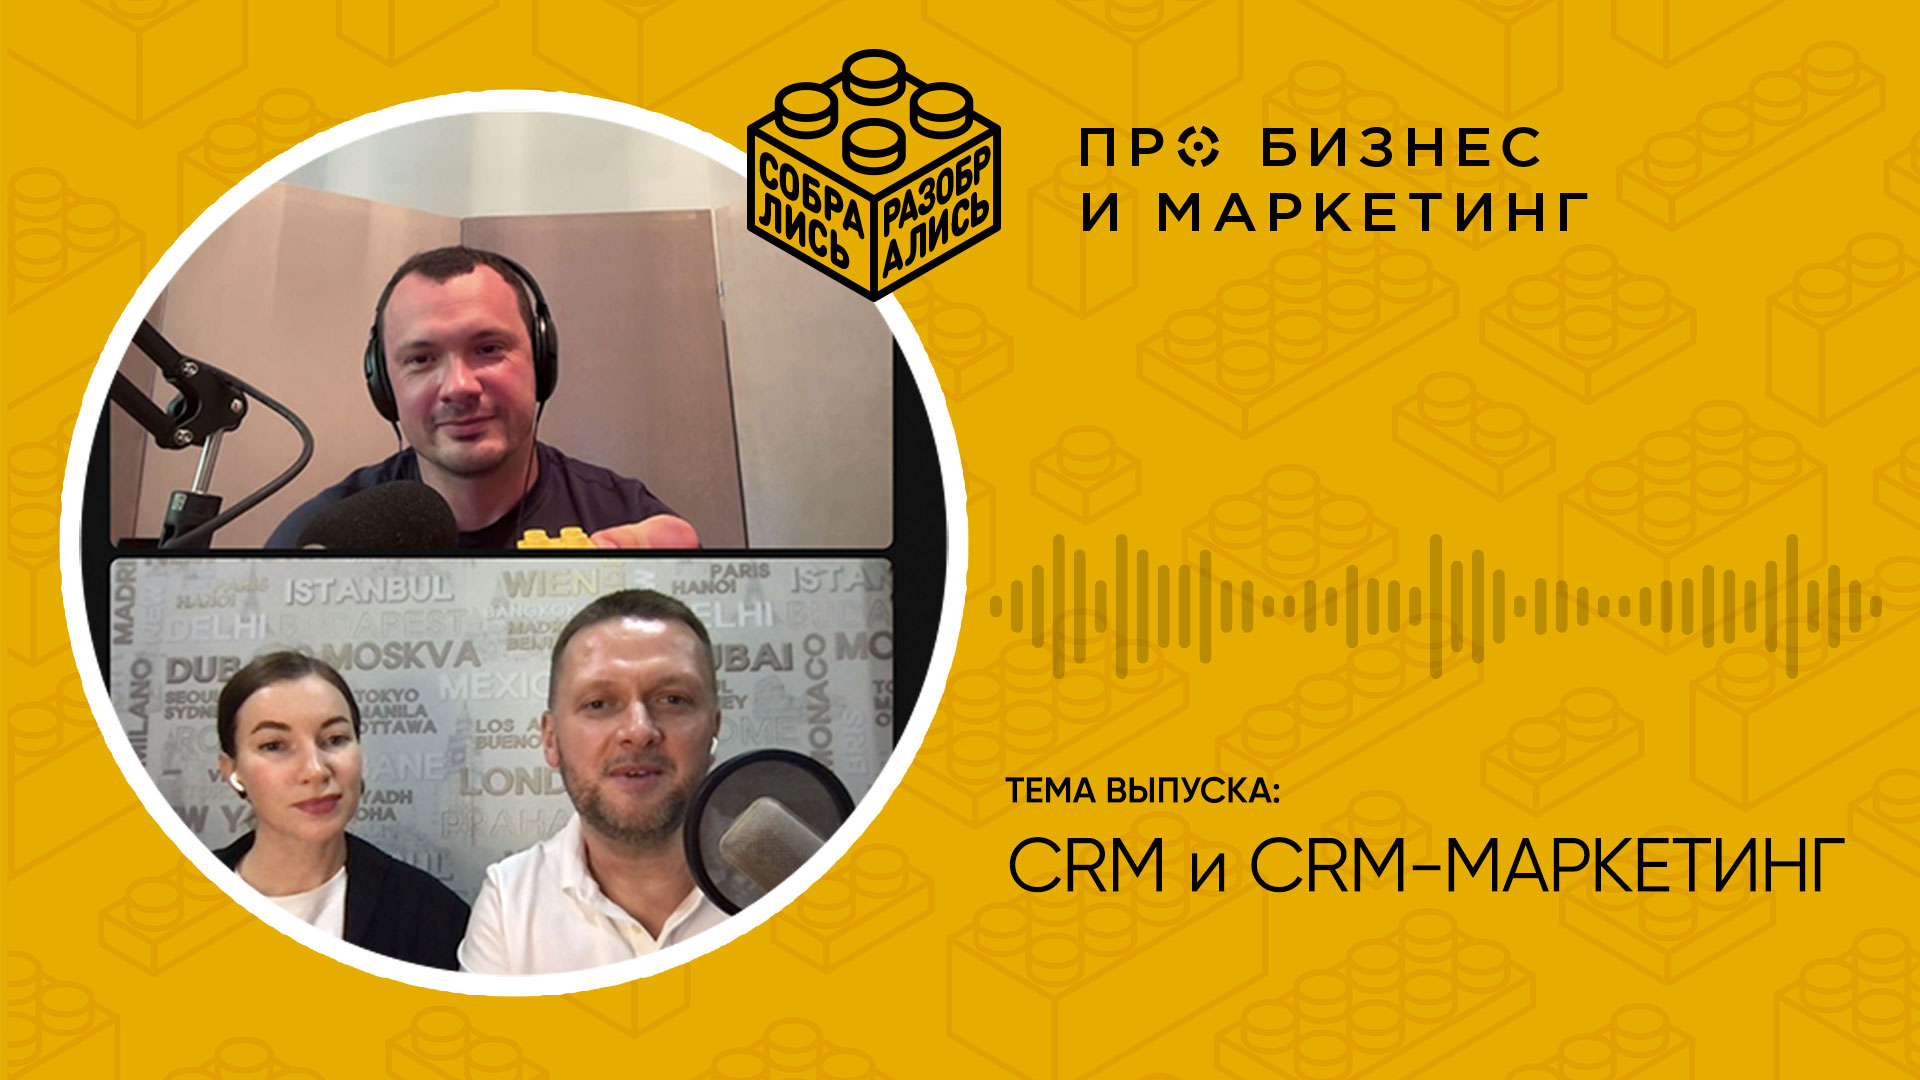 Как устроены CRM и CRМ-маркетинг (с Дмитрием Бороздиным, RetailCRM)